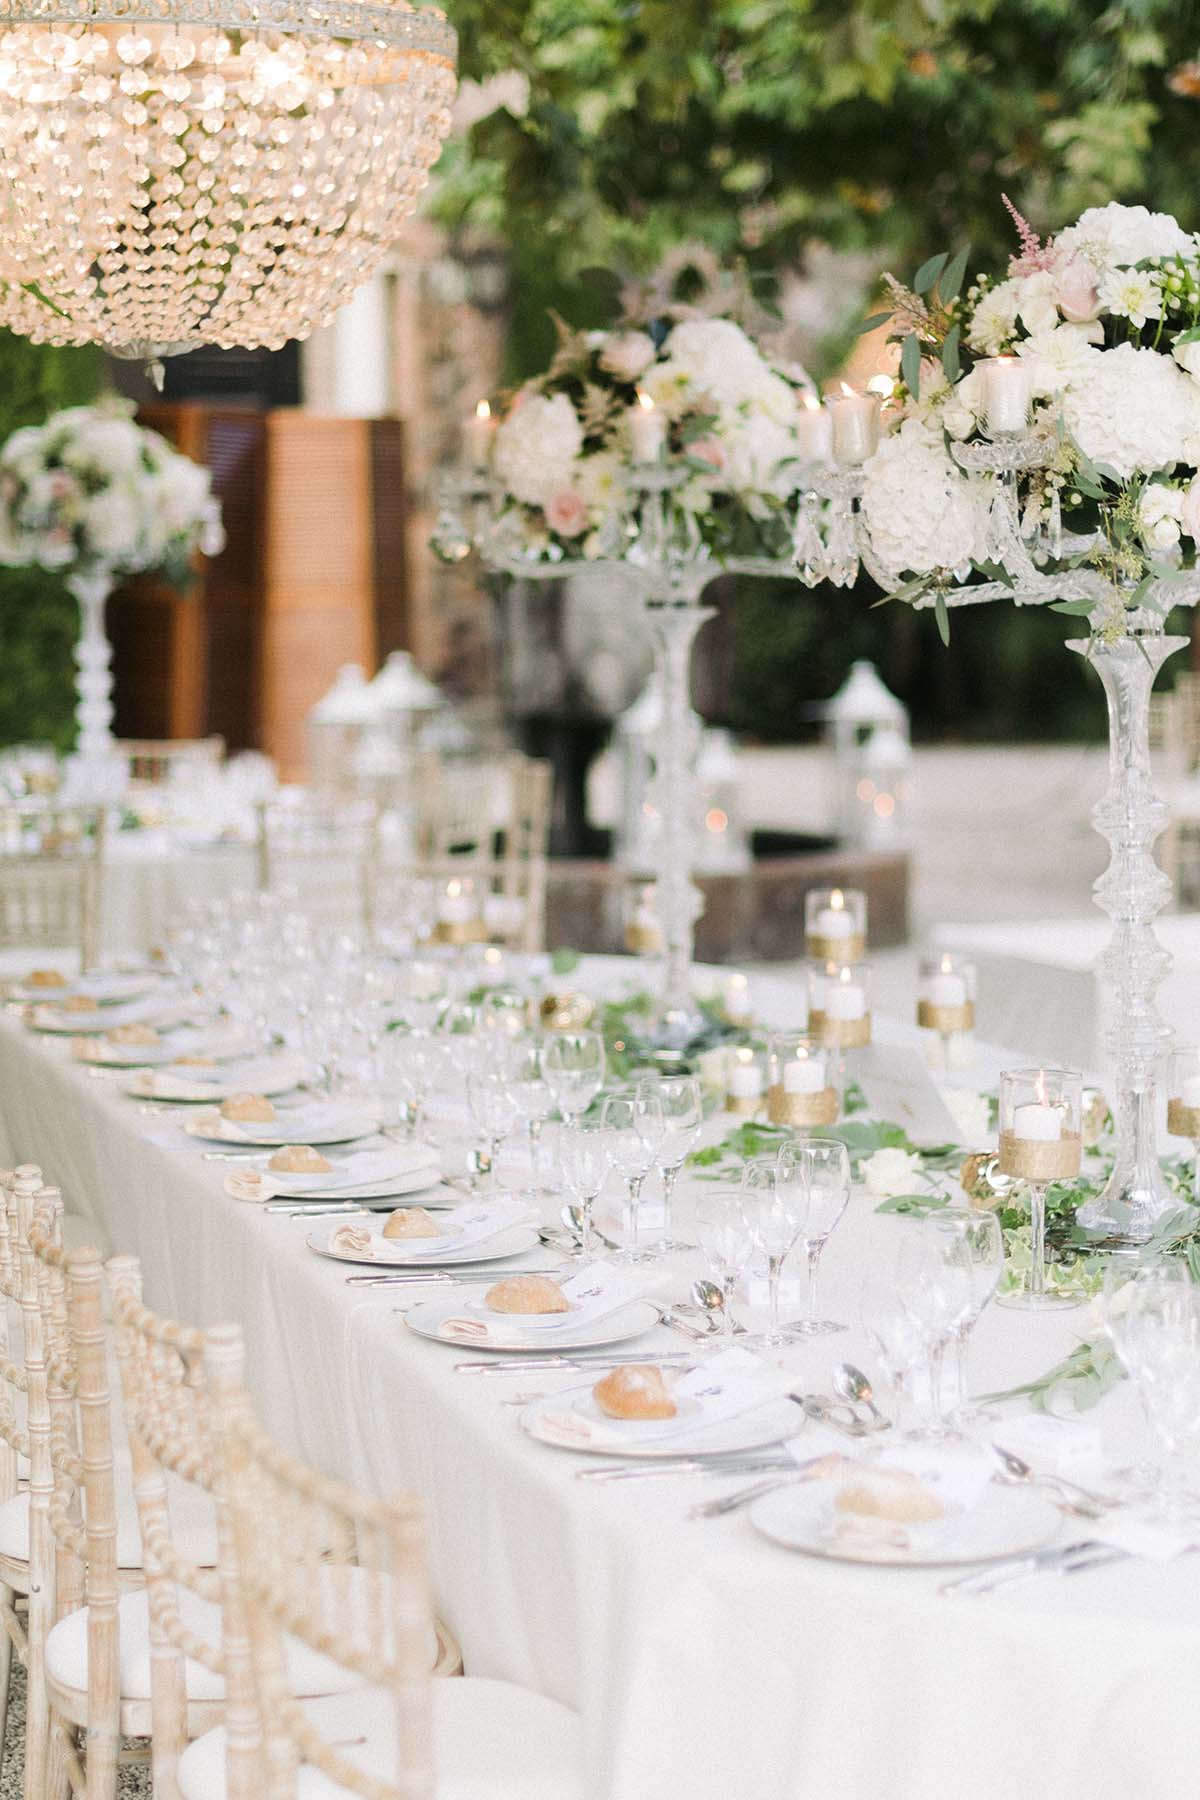 Une belle table decorée de fleurs. C'est très élègant et raffiné